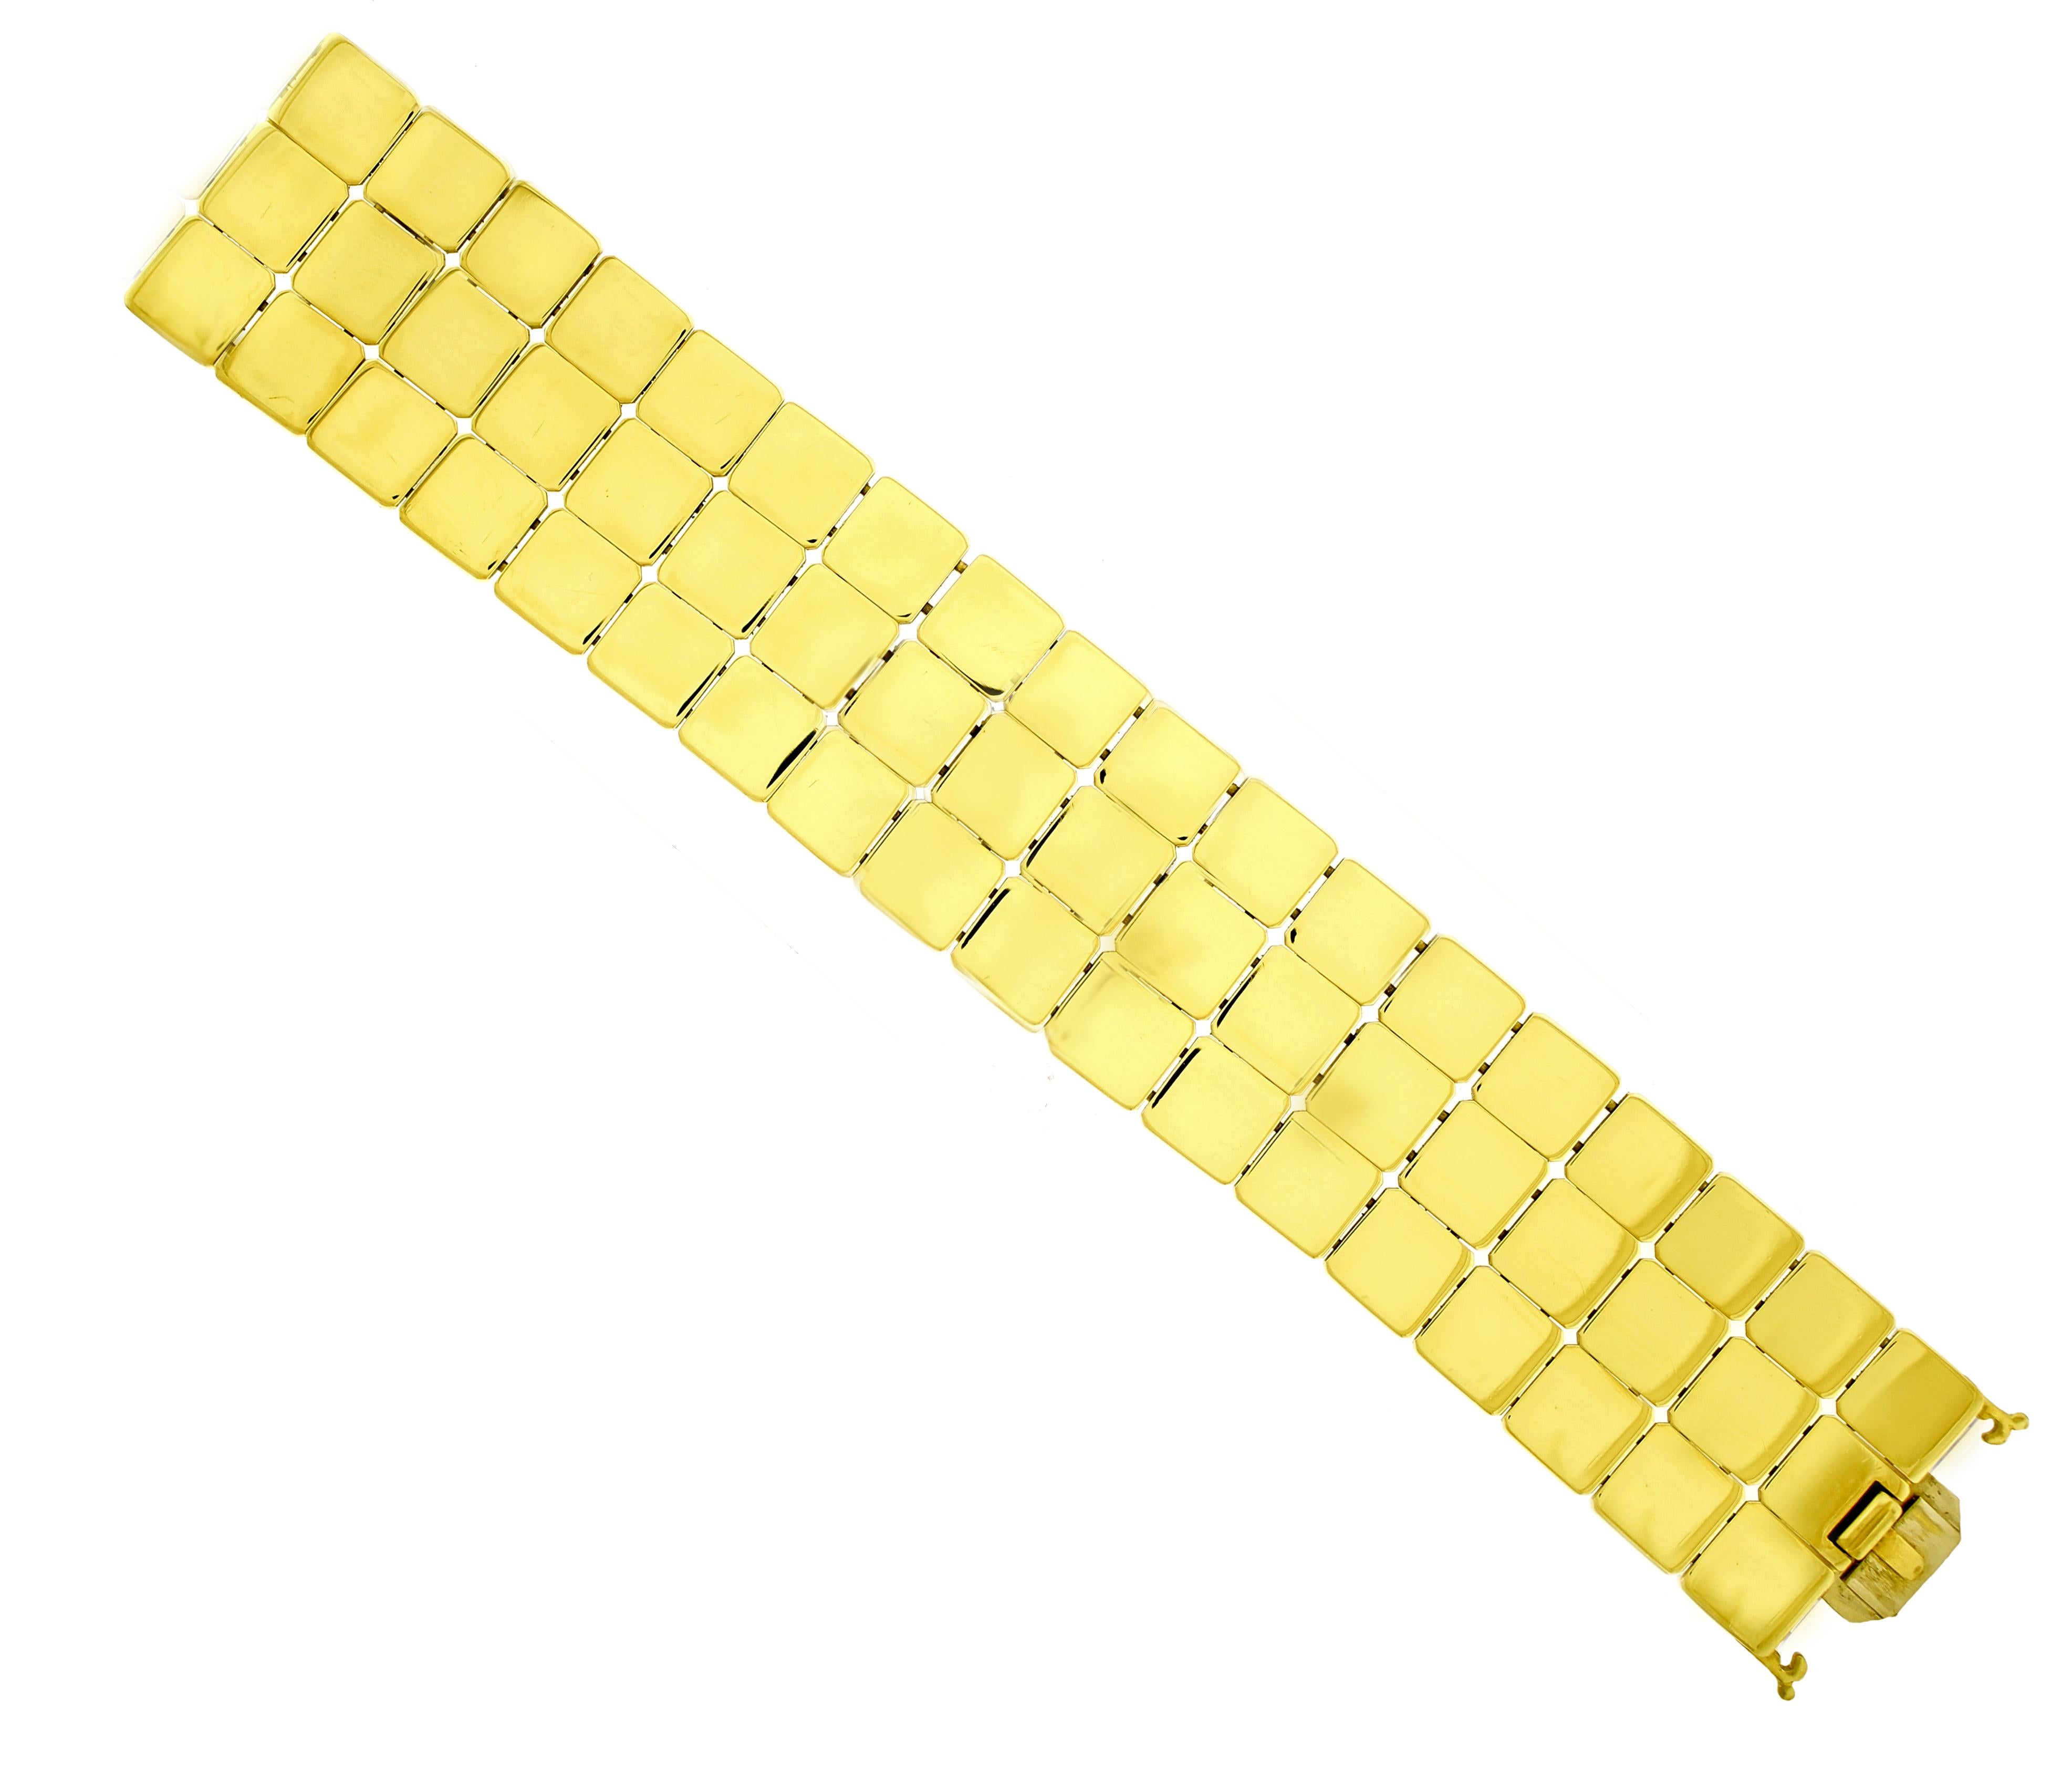 De Tiffany & Co, ce bracelet miroir carré à trois rangs est signé et daté de 2002.
• Designer : Tiffany & Co.
• Métal : or jaune 18kt
• Longueur : 7 1/8 pouces
• Largeur : 1 1/8 pouces
• Poids : 130,3 grammes
• Emballage : Boîte de présentation